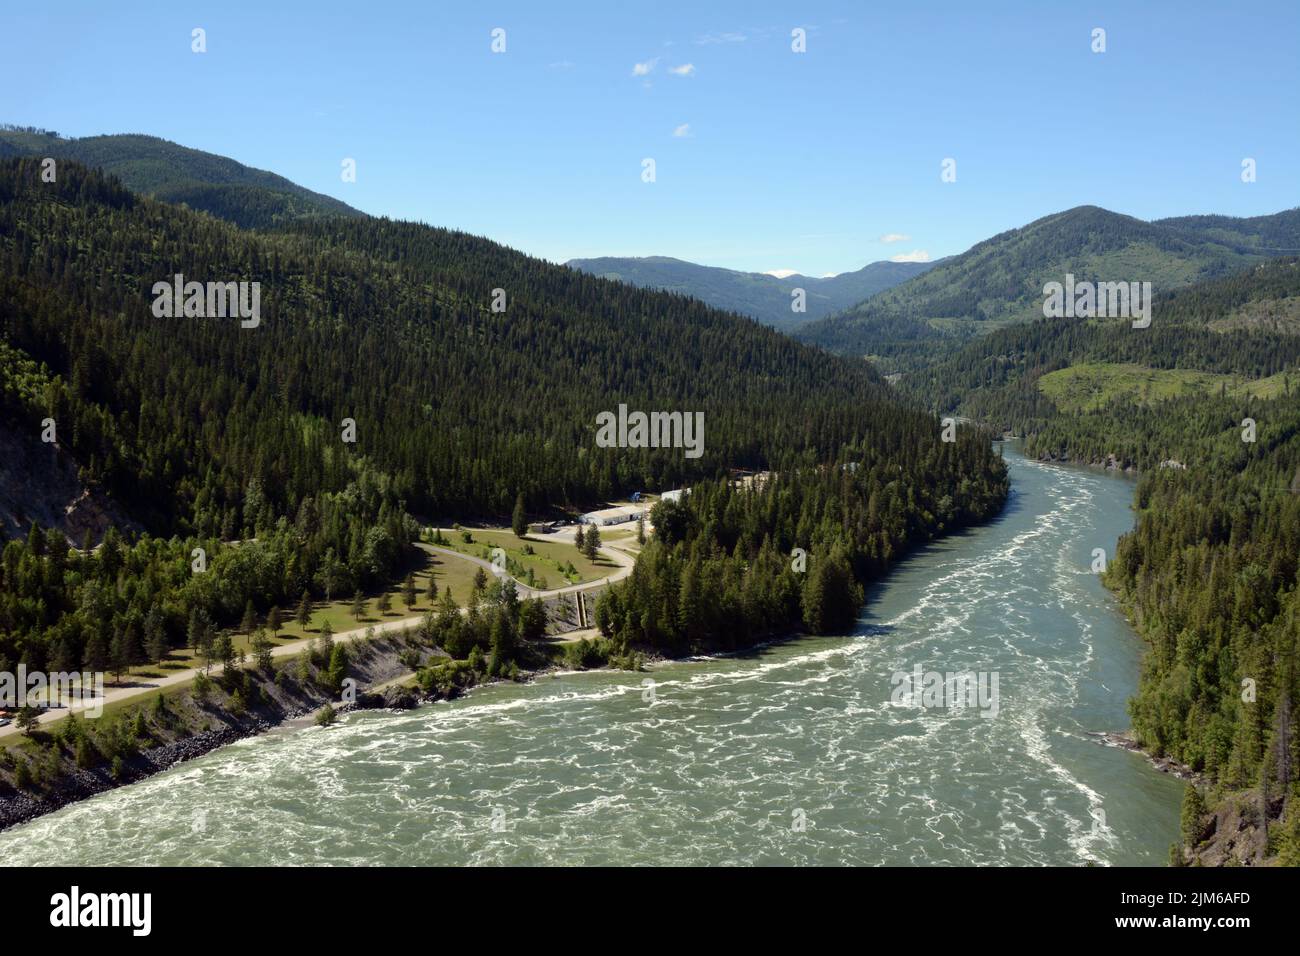 La rivière Pend-oreille, qui coule au Canada, depuis les États-Unis, après avoir traversé le barrage Boundary, près des chutes Metaline, État de Washington, États-Unis. Banque D'Images